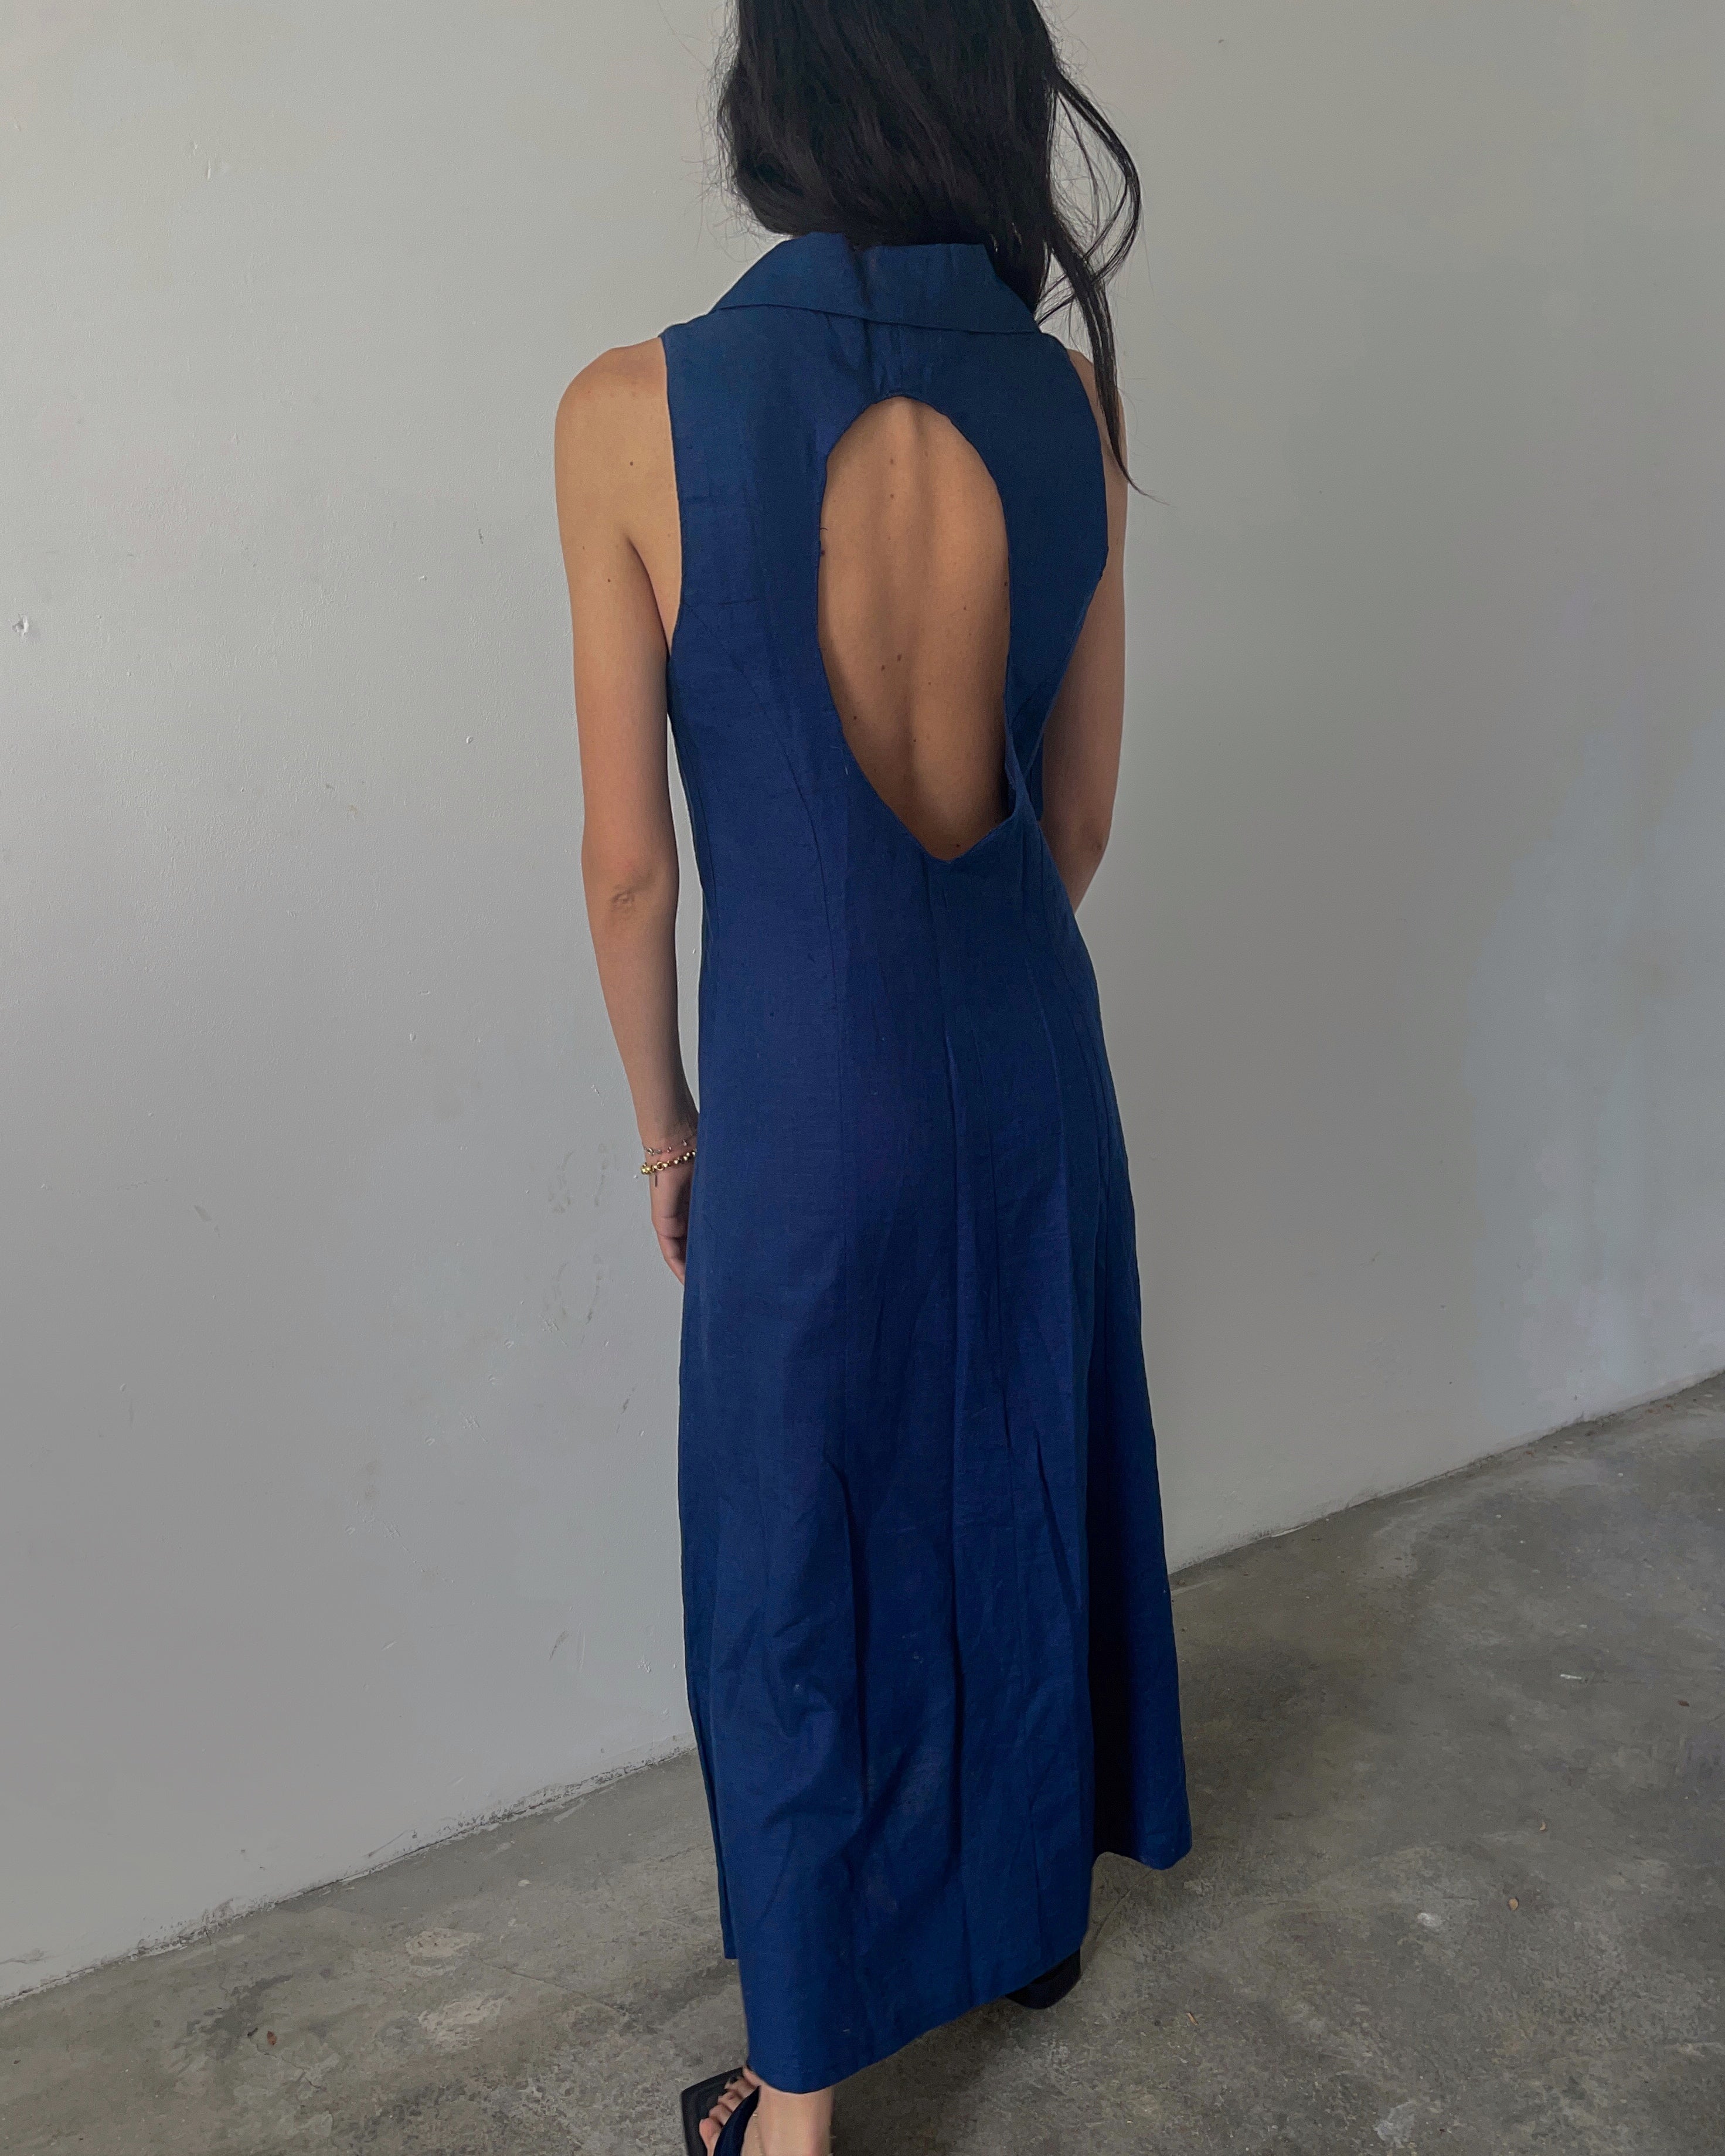 Minimal blue dress